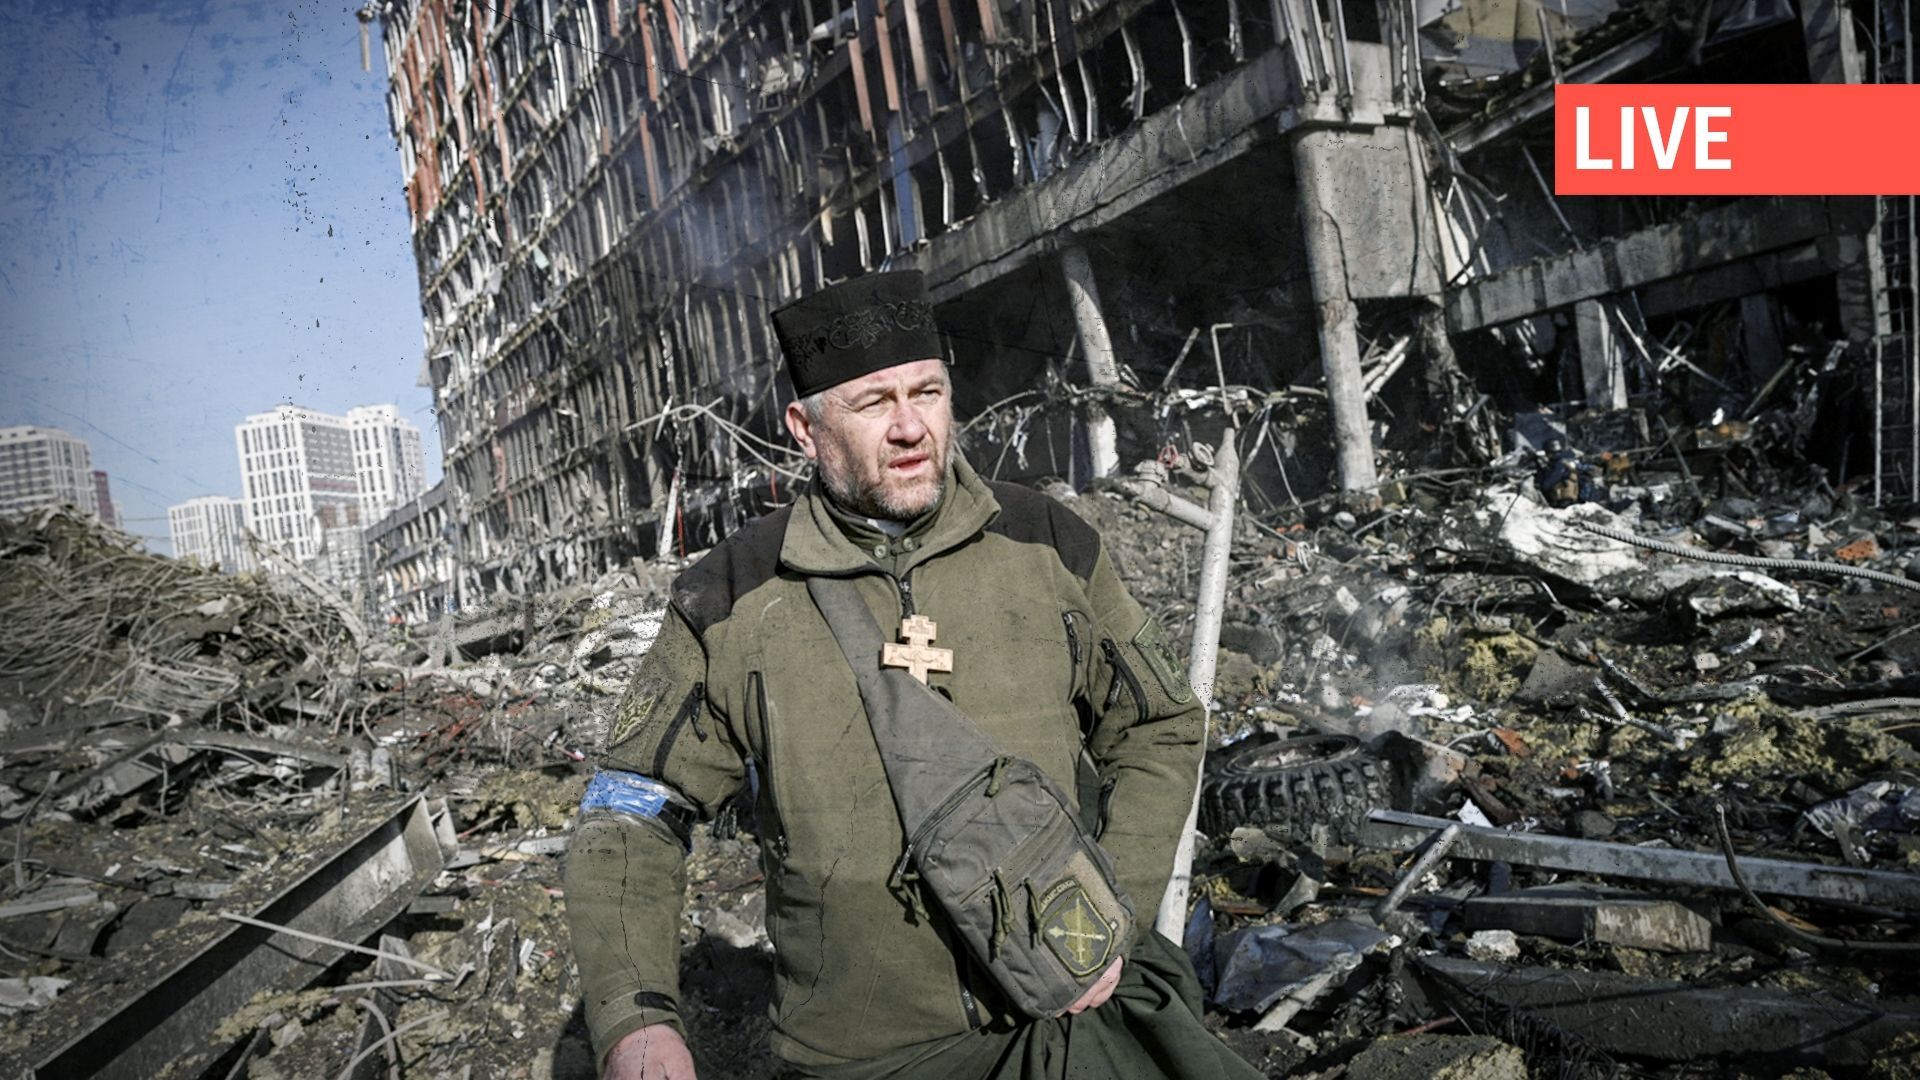 L'aumônier de l'armée ukrainienne Mikola Madenski marche parmi les débris à l'extérieur du centre commercial Retroville détruit dans un quartier résidentiel, après une attaque russe sur la capitale ukrainienne, Kiev, le 21 mars 2022.